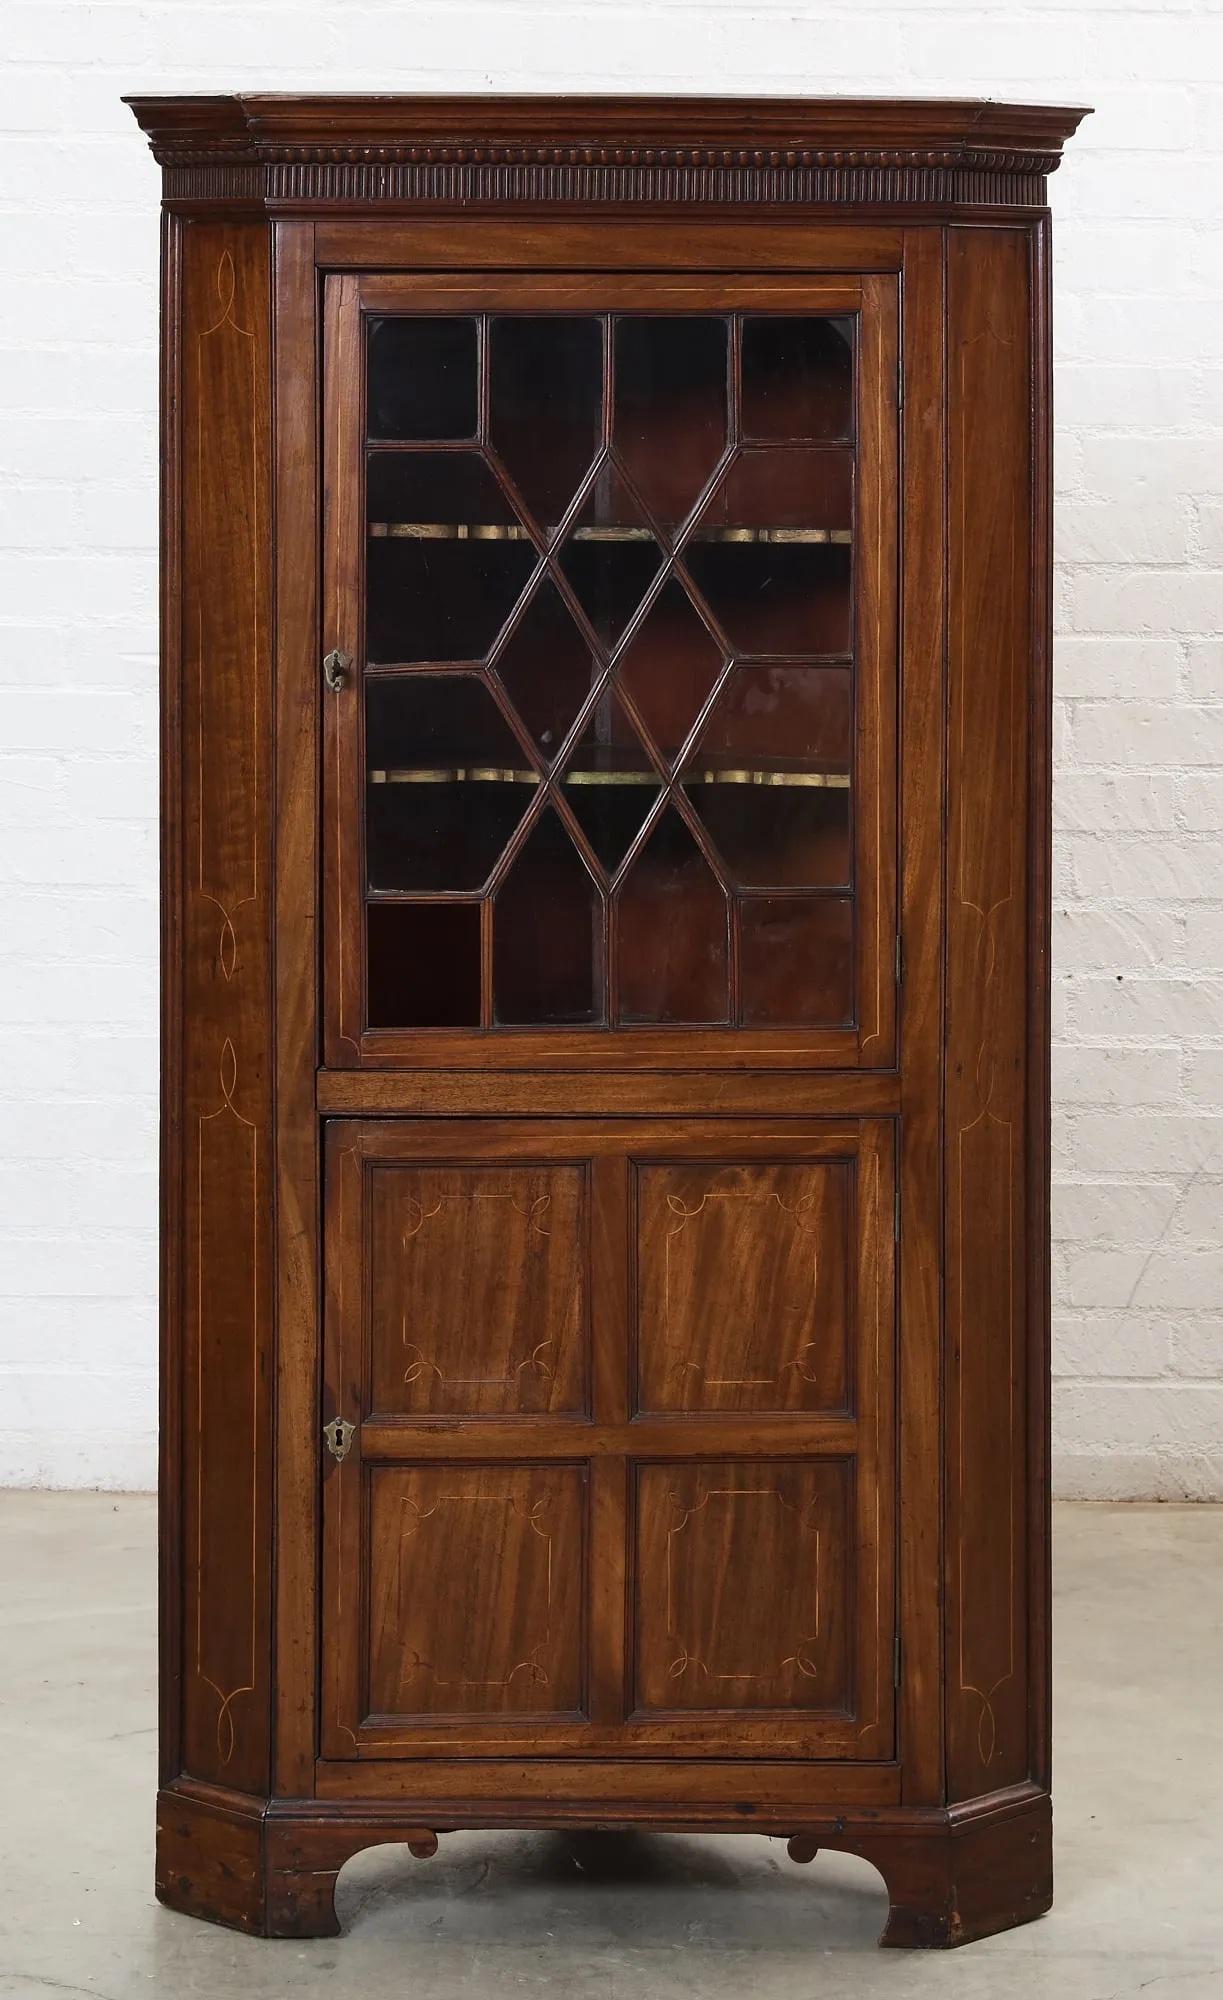 Cabinet d'angle en acajou marqueté de style fédéral américain de la fin du XVIIIe siècle, avec une corniche en surplomb moulurée en denticules au-dessus de la section supérieure avec une porte à vitres divisées à motif de diamant s'ouvrant sur un